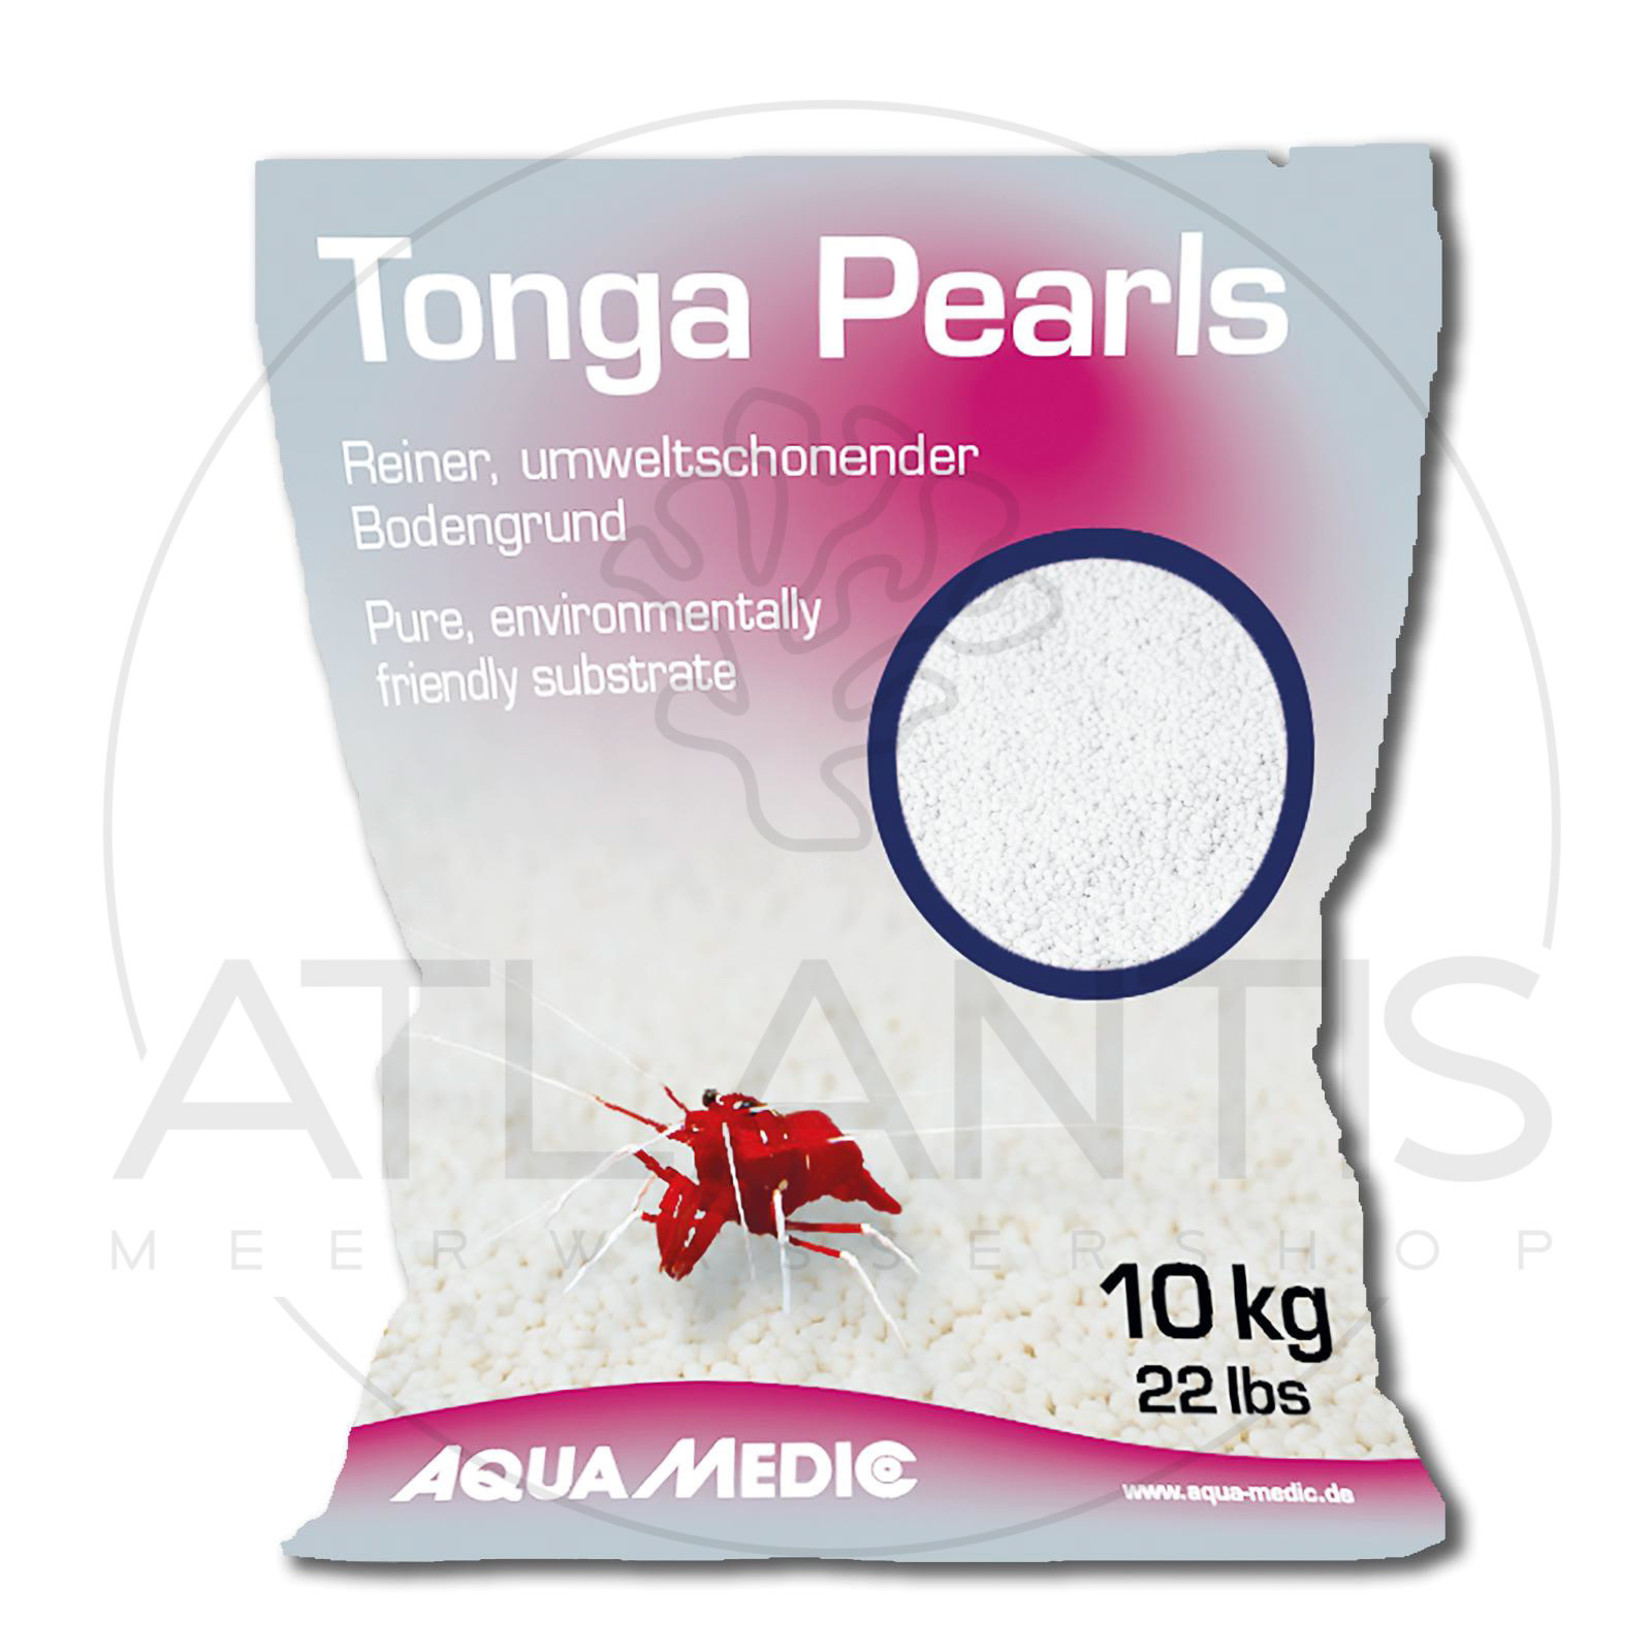 Aqua Medic Tonga Pearls - 10 kg bag